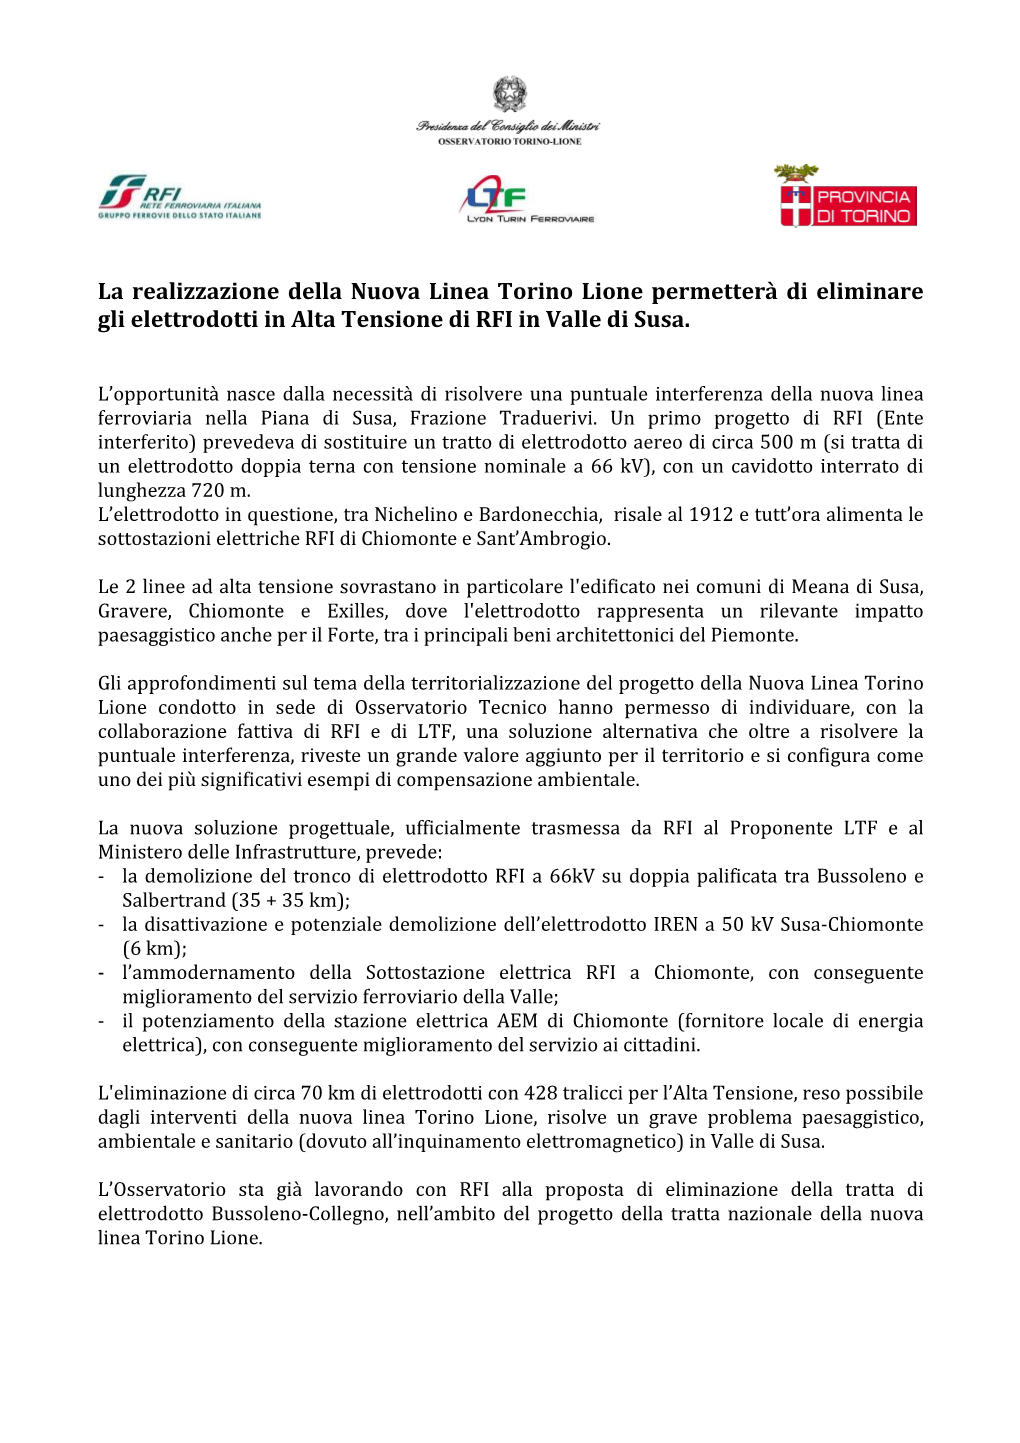 La Realizzazione Della Nuova Linea Torino Lione Permetterà Di Eliminare Gli Elettrodotti in Alta Tensione Di RFI in Valle Di Susa